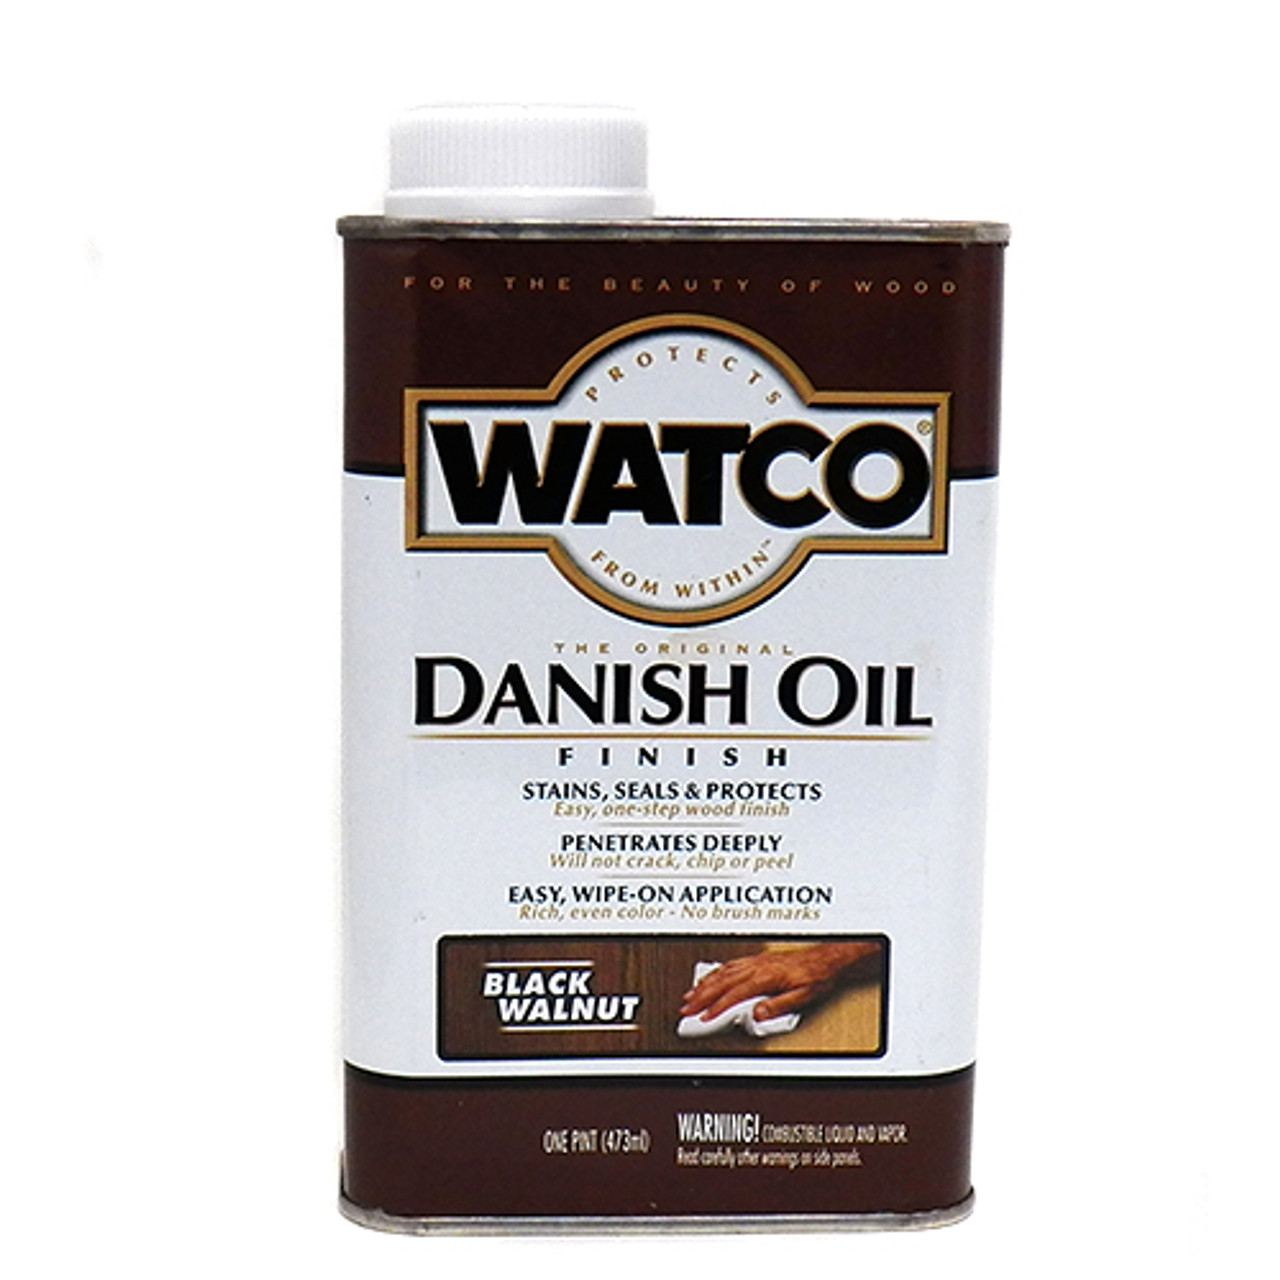 Watco Danish Oil, Black Walnut, Pint